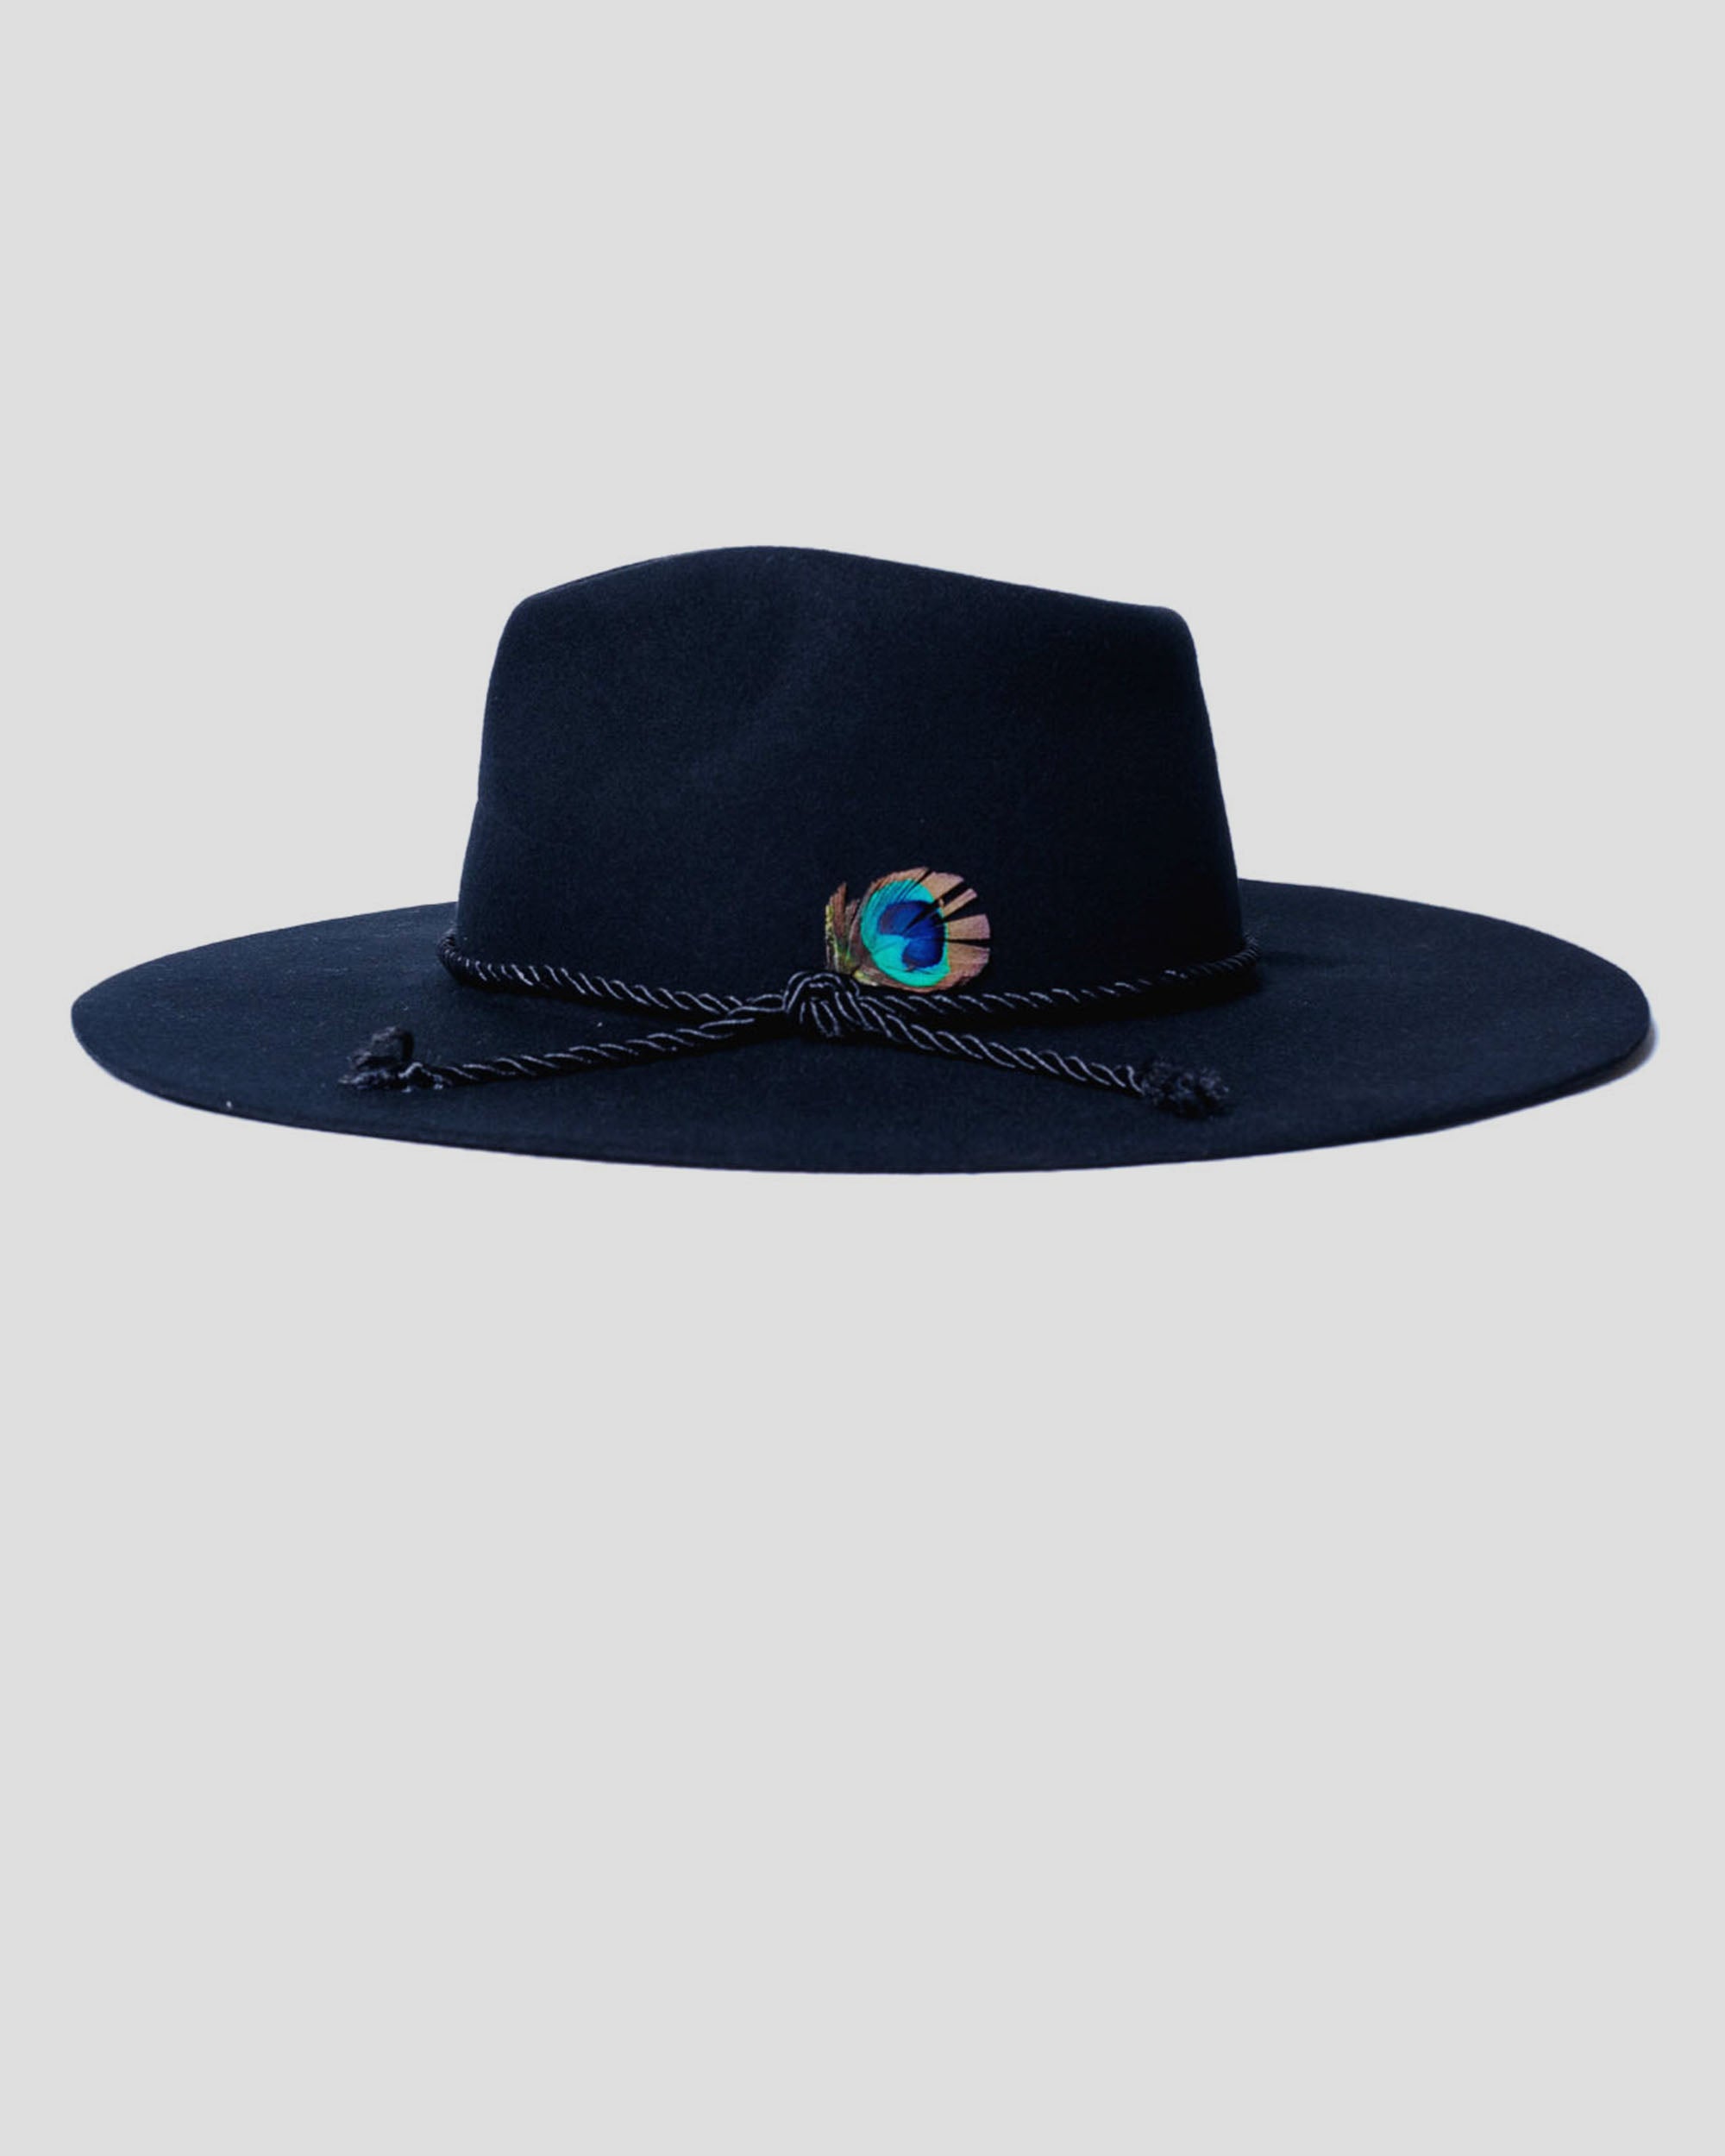 SG Alexander Fedora Hat - Black – Southern Gents